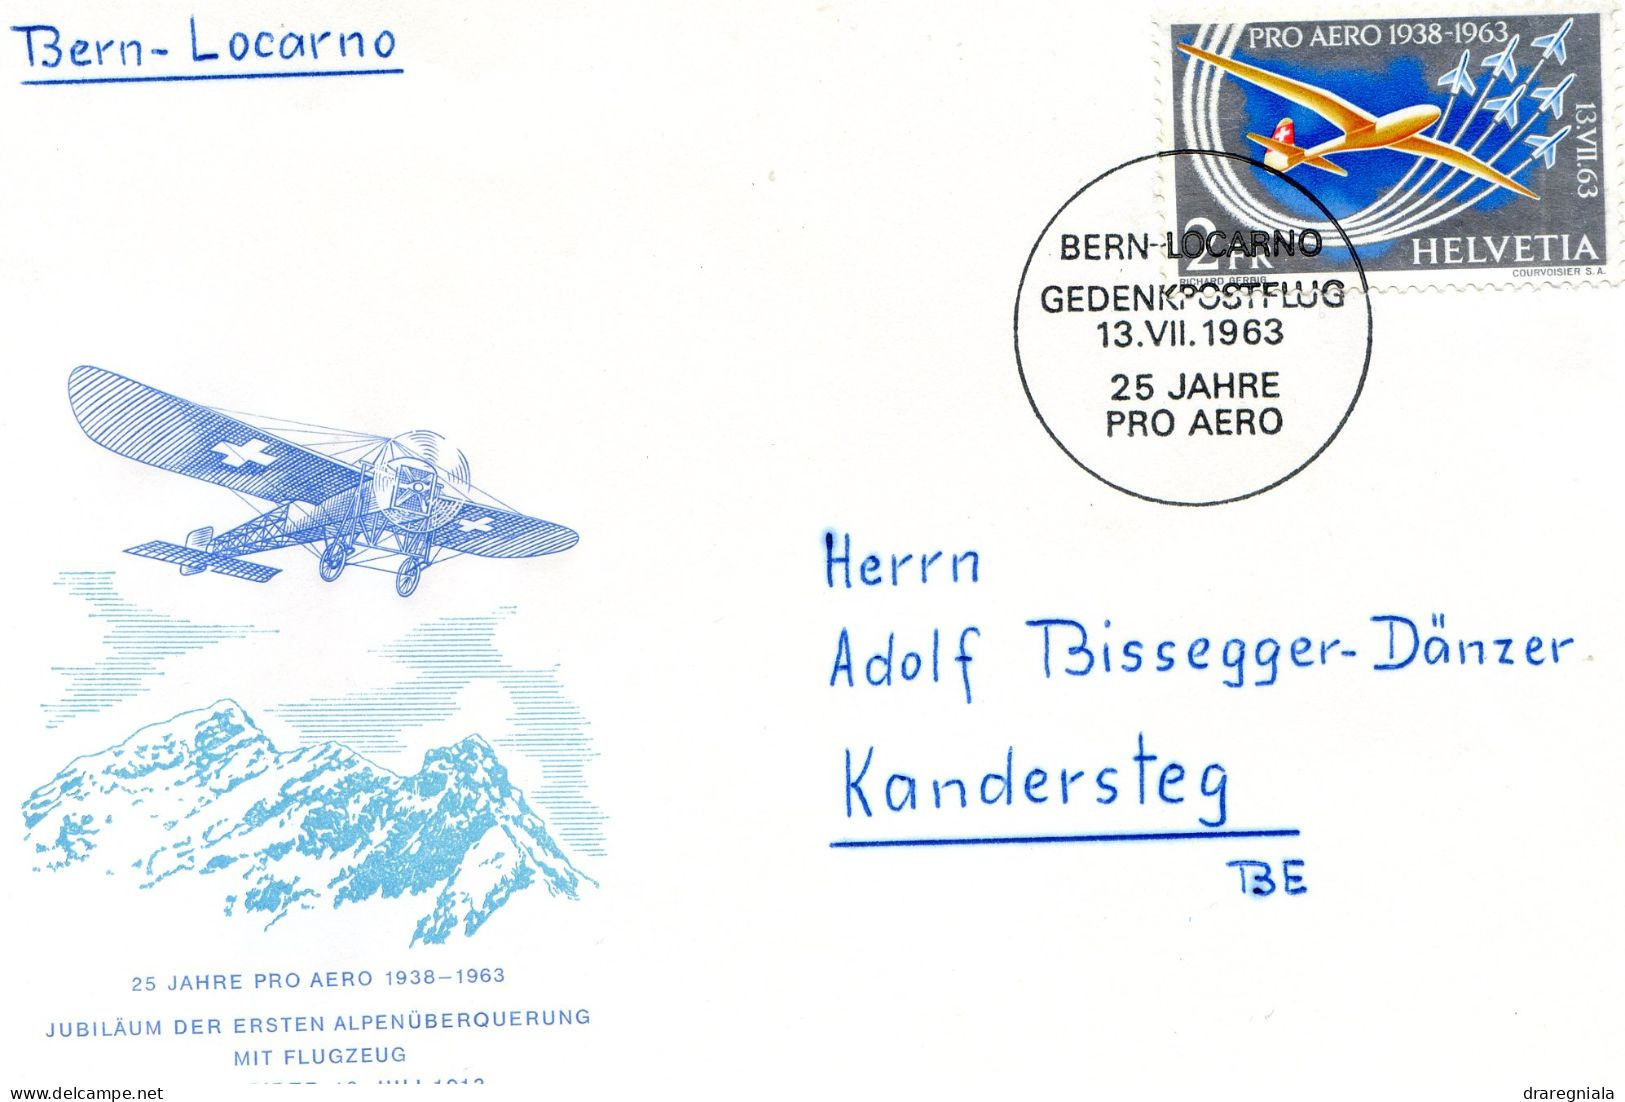 Bern - Locarno Gedenkpostflug 13 VII 1963 - 25 Jahre Pro Aero 1938 1963 - Eerste Vluchten